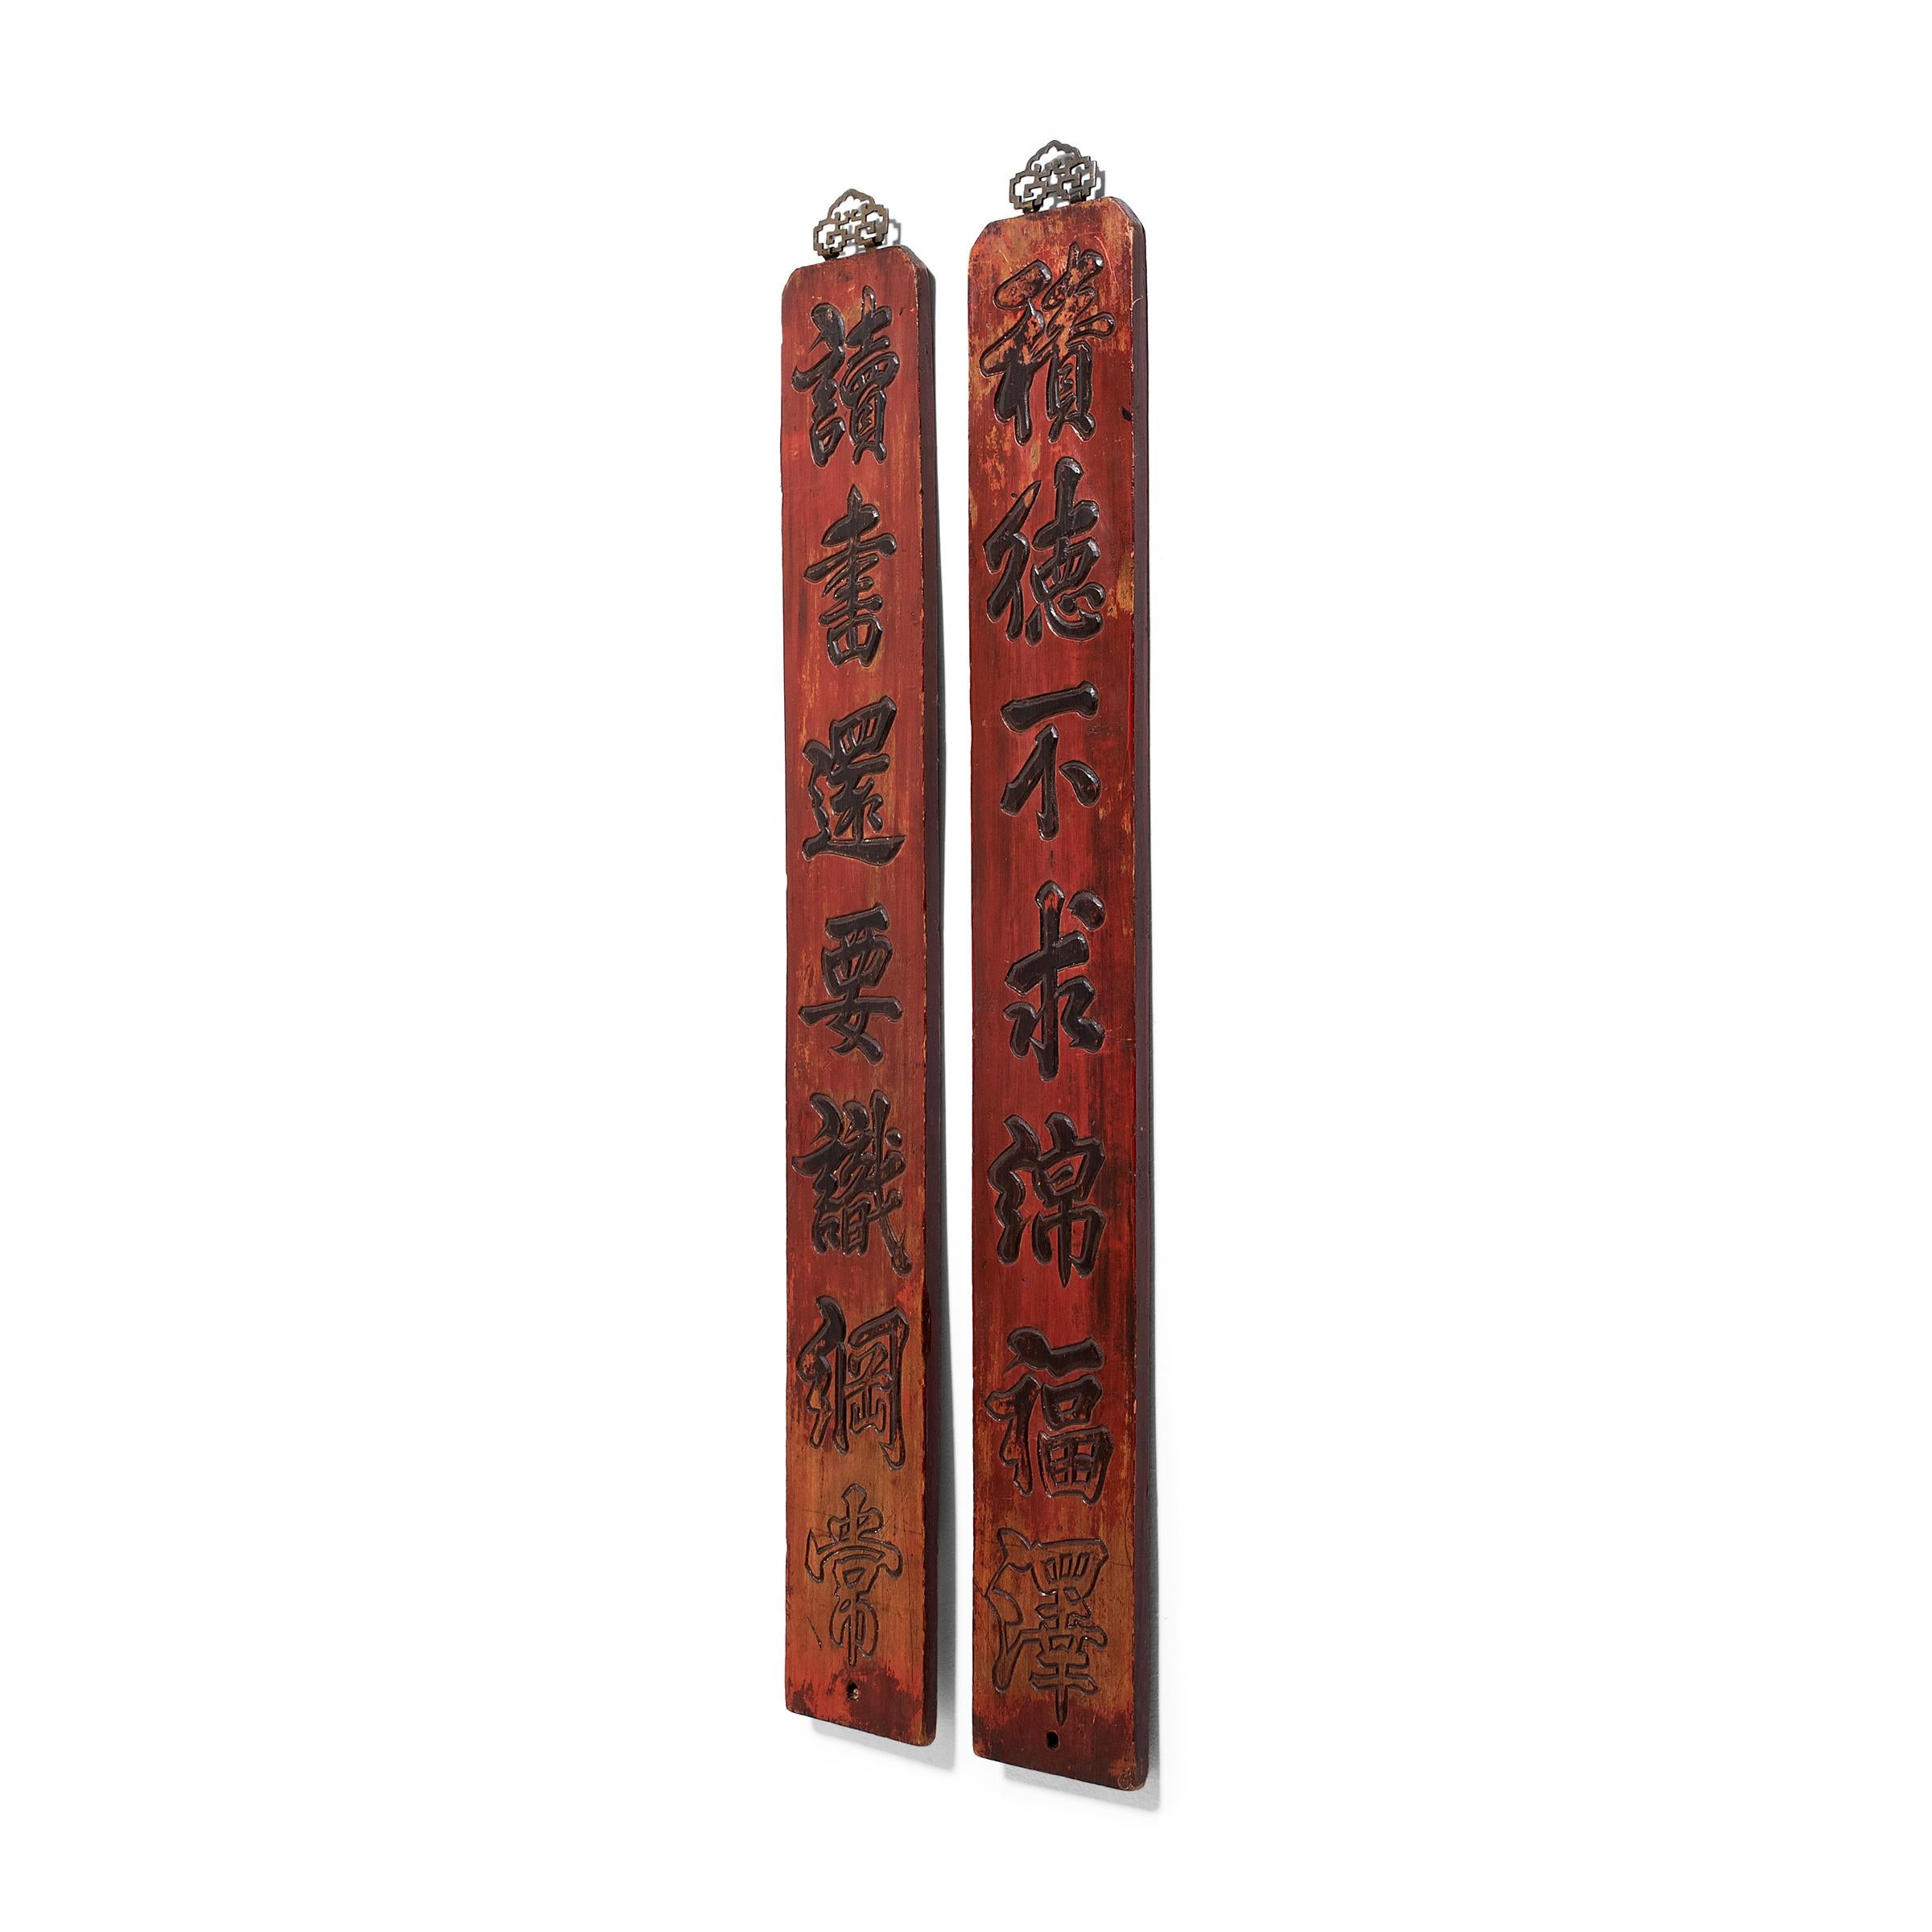 Dieses Paar dekorativer Schilder aus rotem Lack stammt aus dem späten 19. Jahrhundert und ist in Relief mit einem poetischen Couplet geschnitzt. Das Couplet, das wie eine Tintenkalligrafie geschnitzt ist, lautet: 